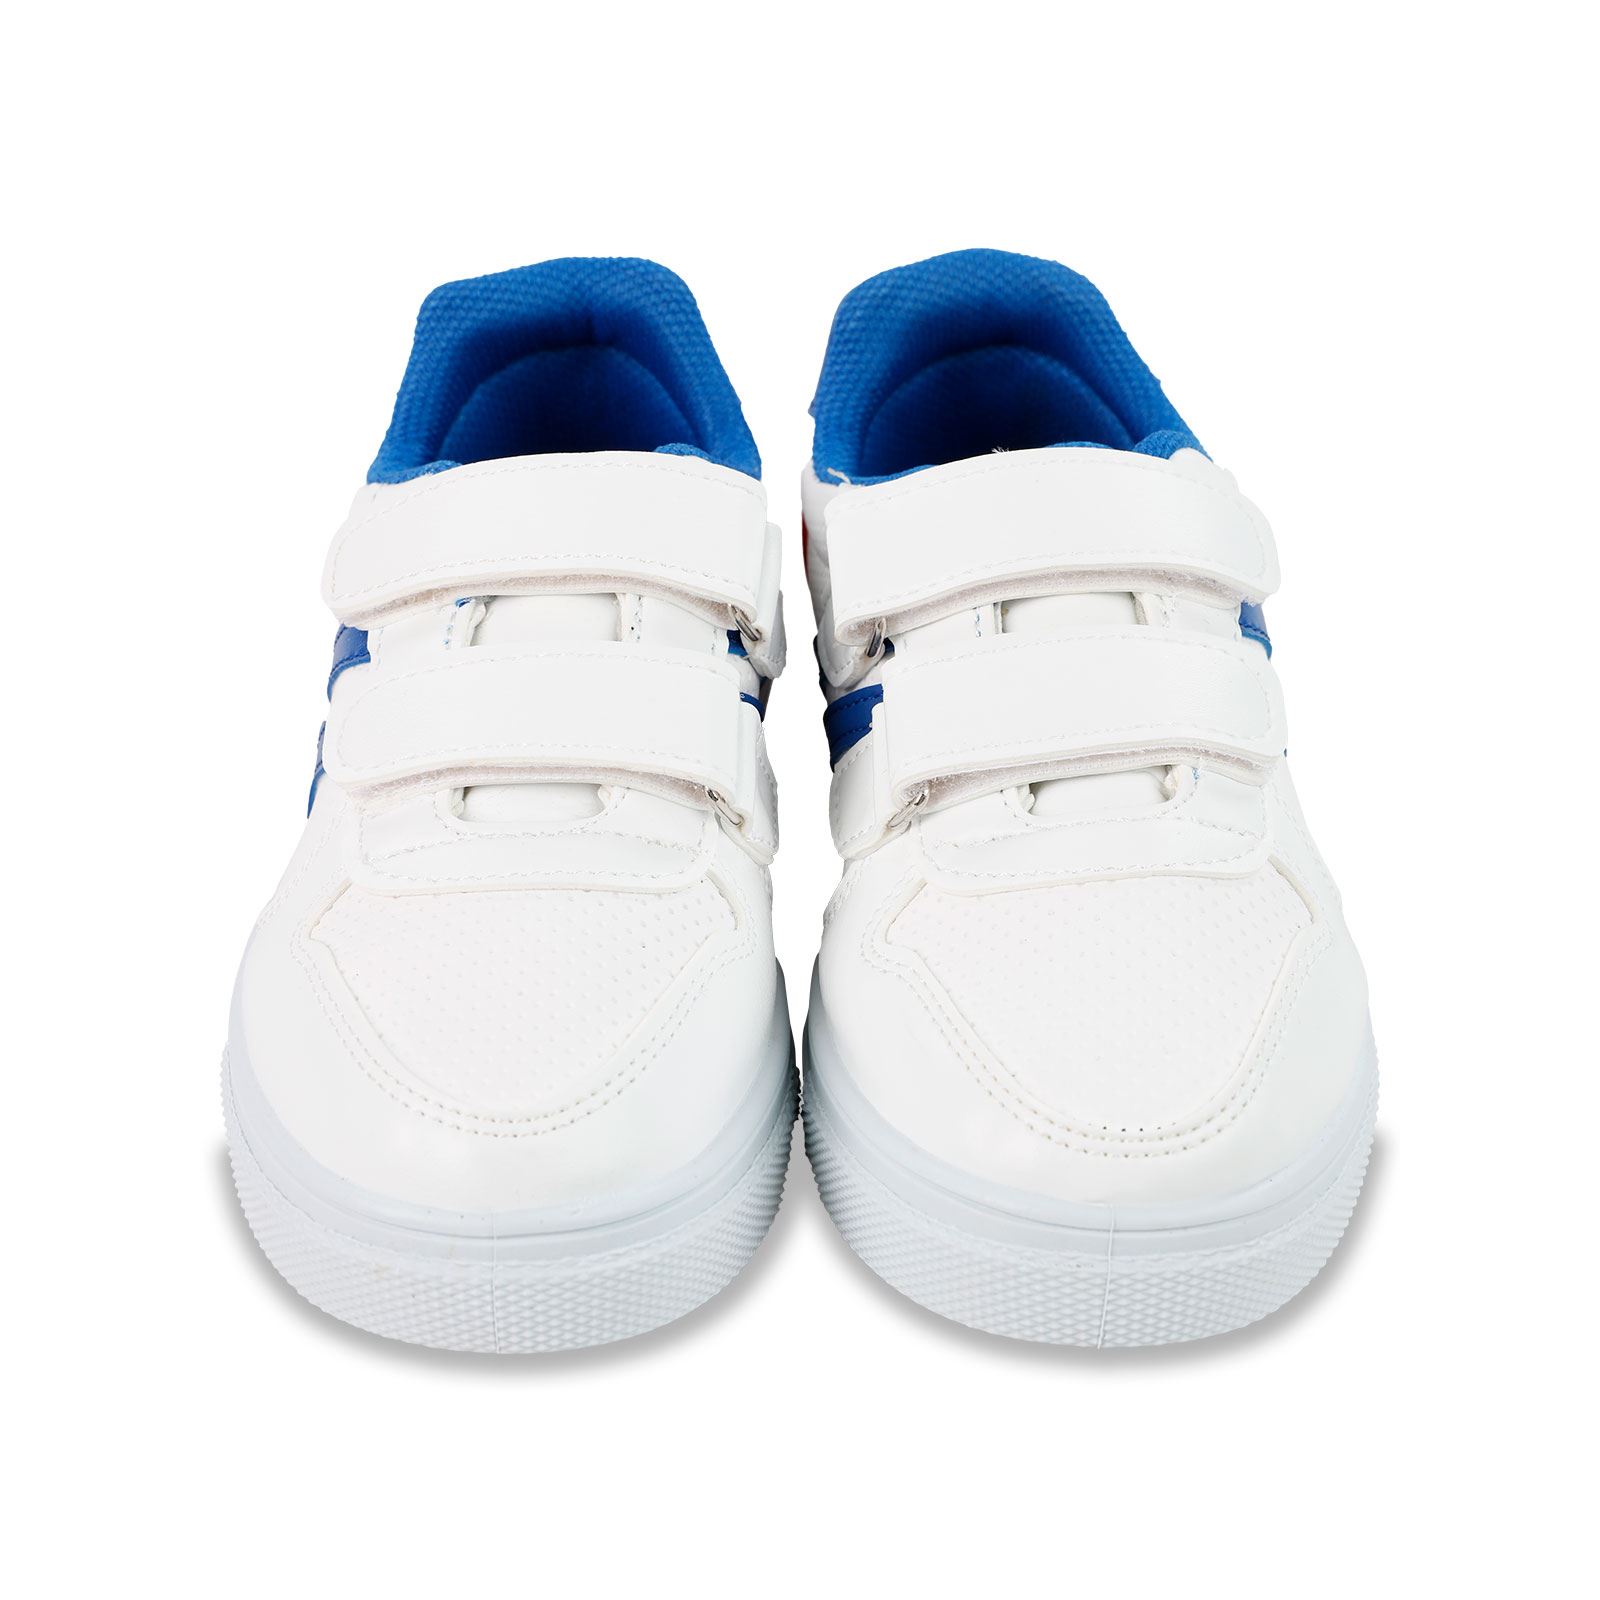 Polaris Erkek Çocuk Spor Ayakkabı 31-35 Numara Beyaz